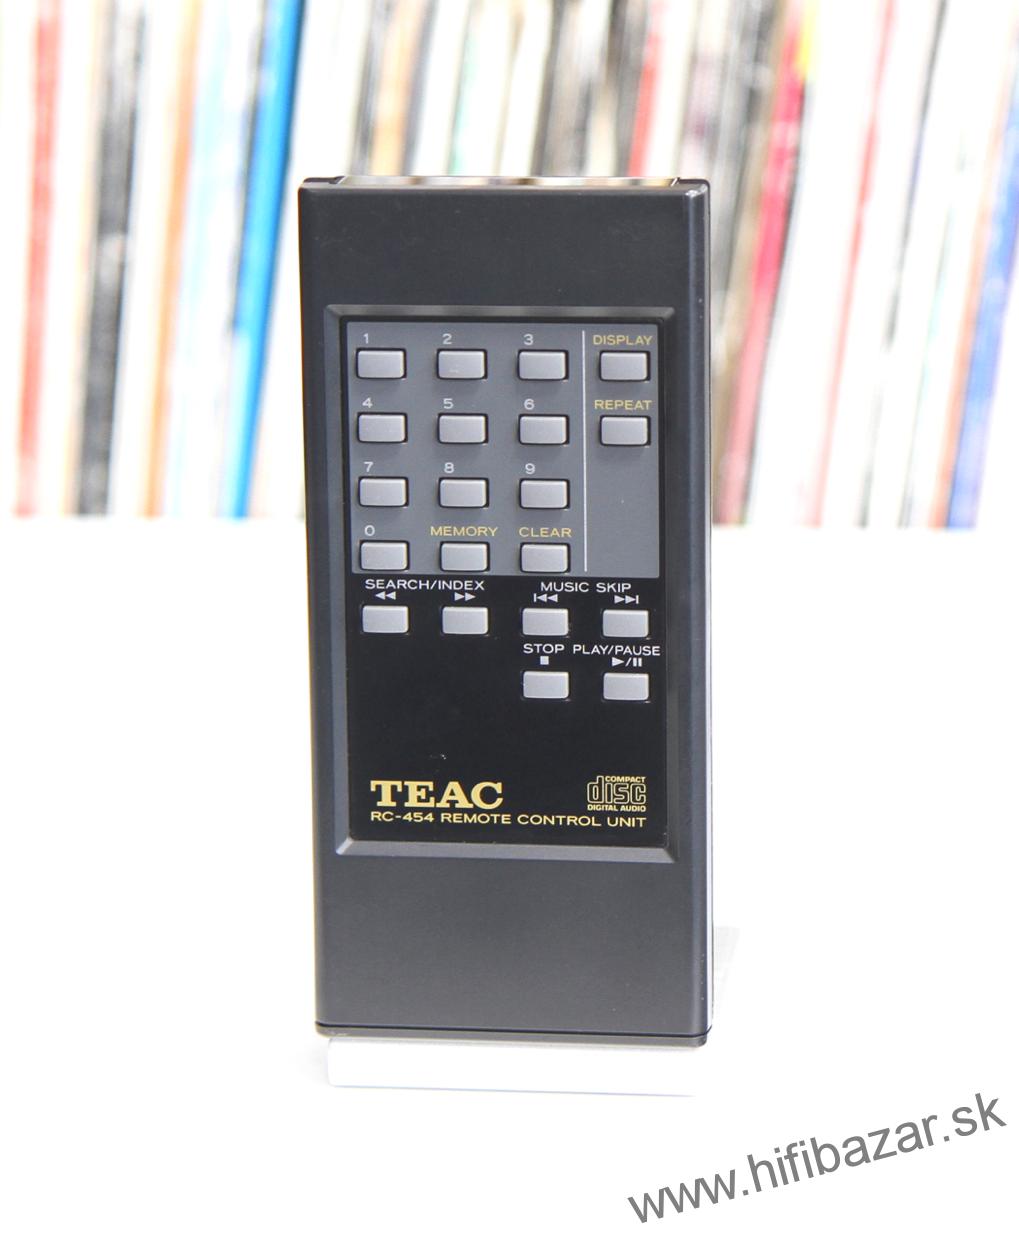 TEAC RC-454